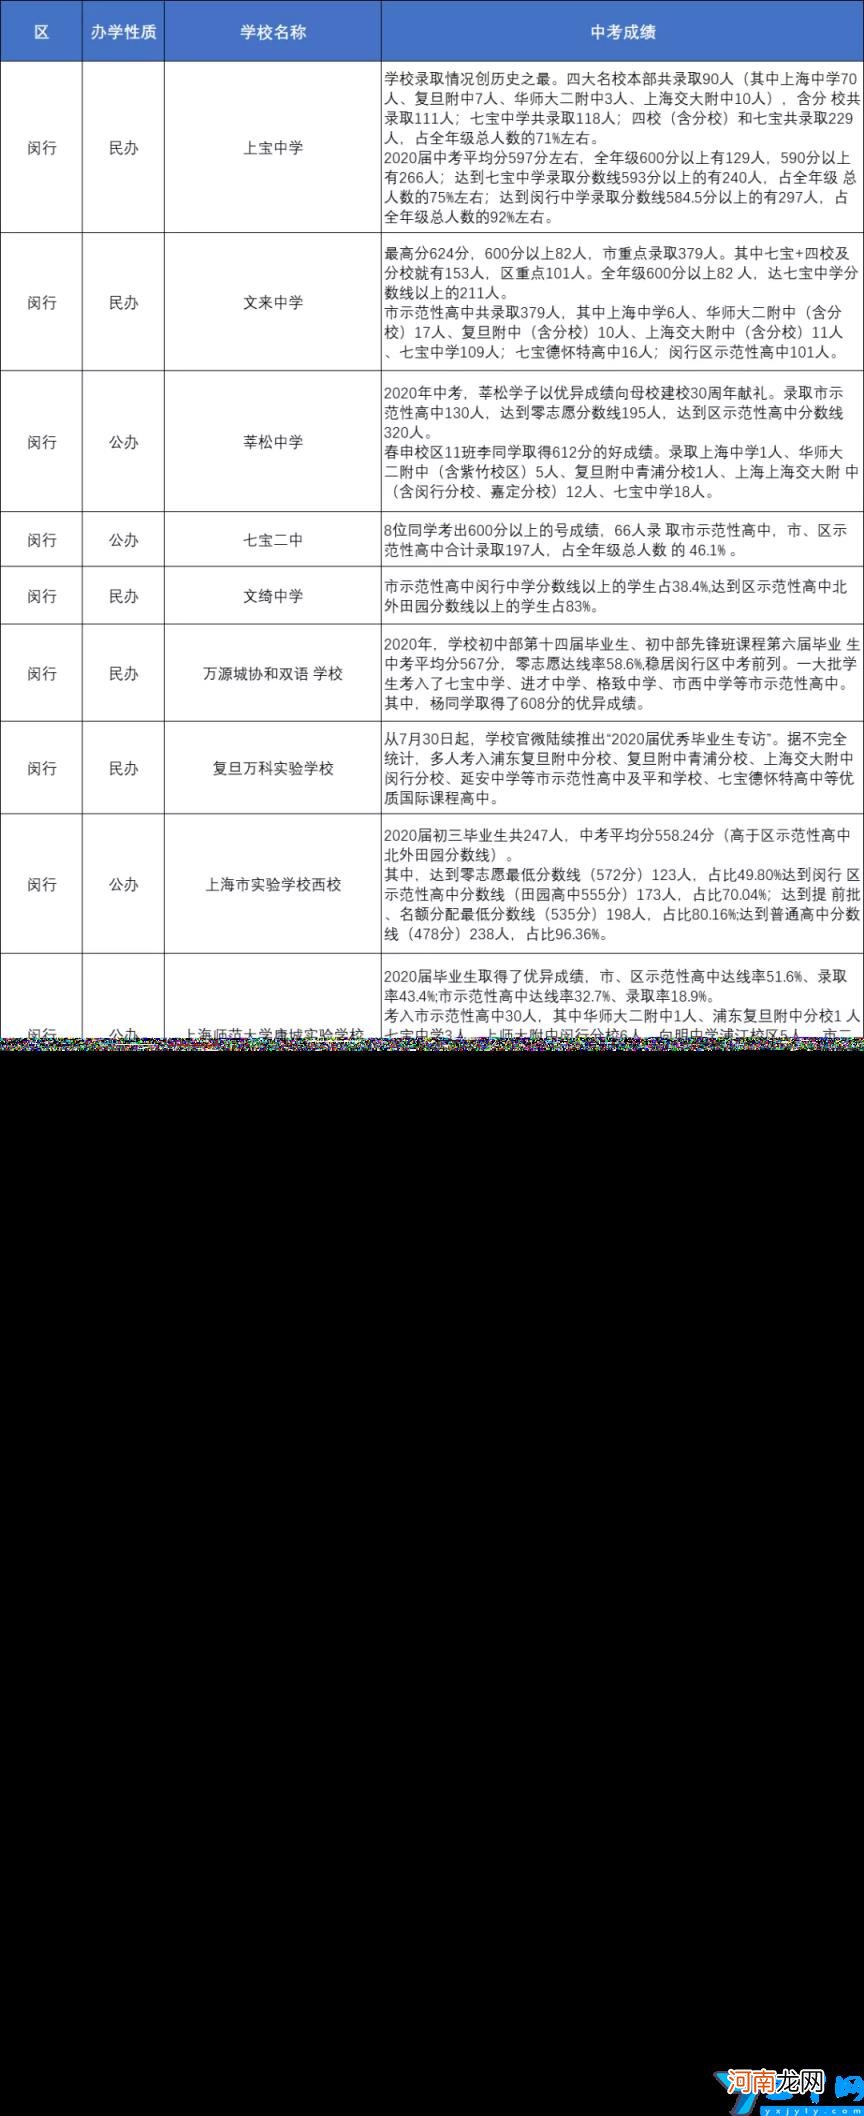 上海优秀的中学有哪些 上海各区重点中学初中推荐